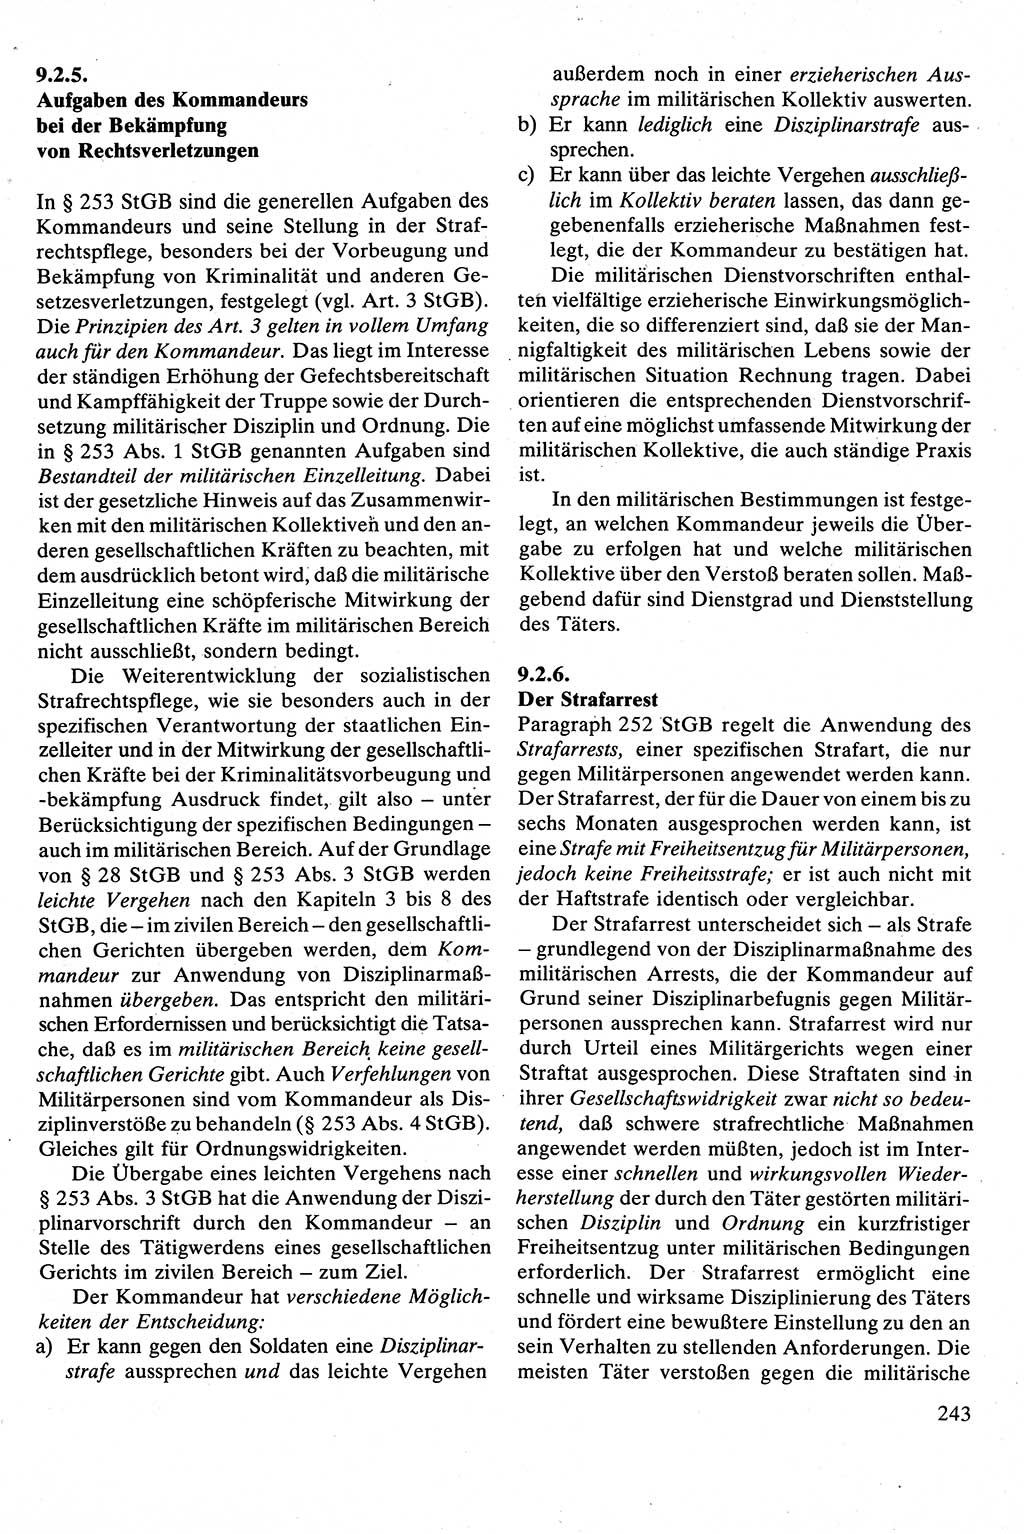 Strafrecht [Deutsche Demokratische Republik (DDR)], Besonderer Teil, Lehrbuch 1981, Seite 243 (Strafr. DDR BT Lb. 1981, S. 243)